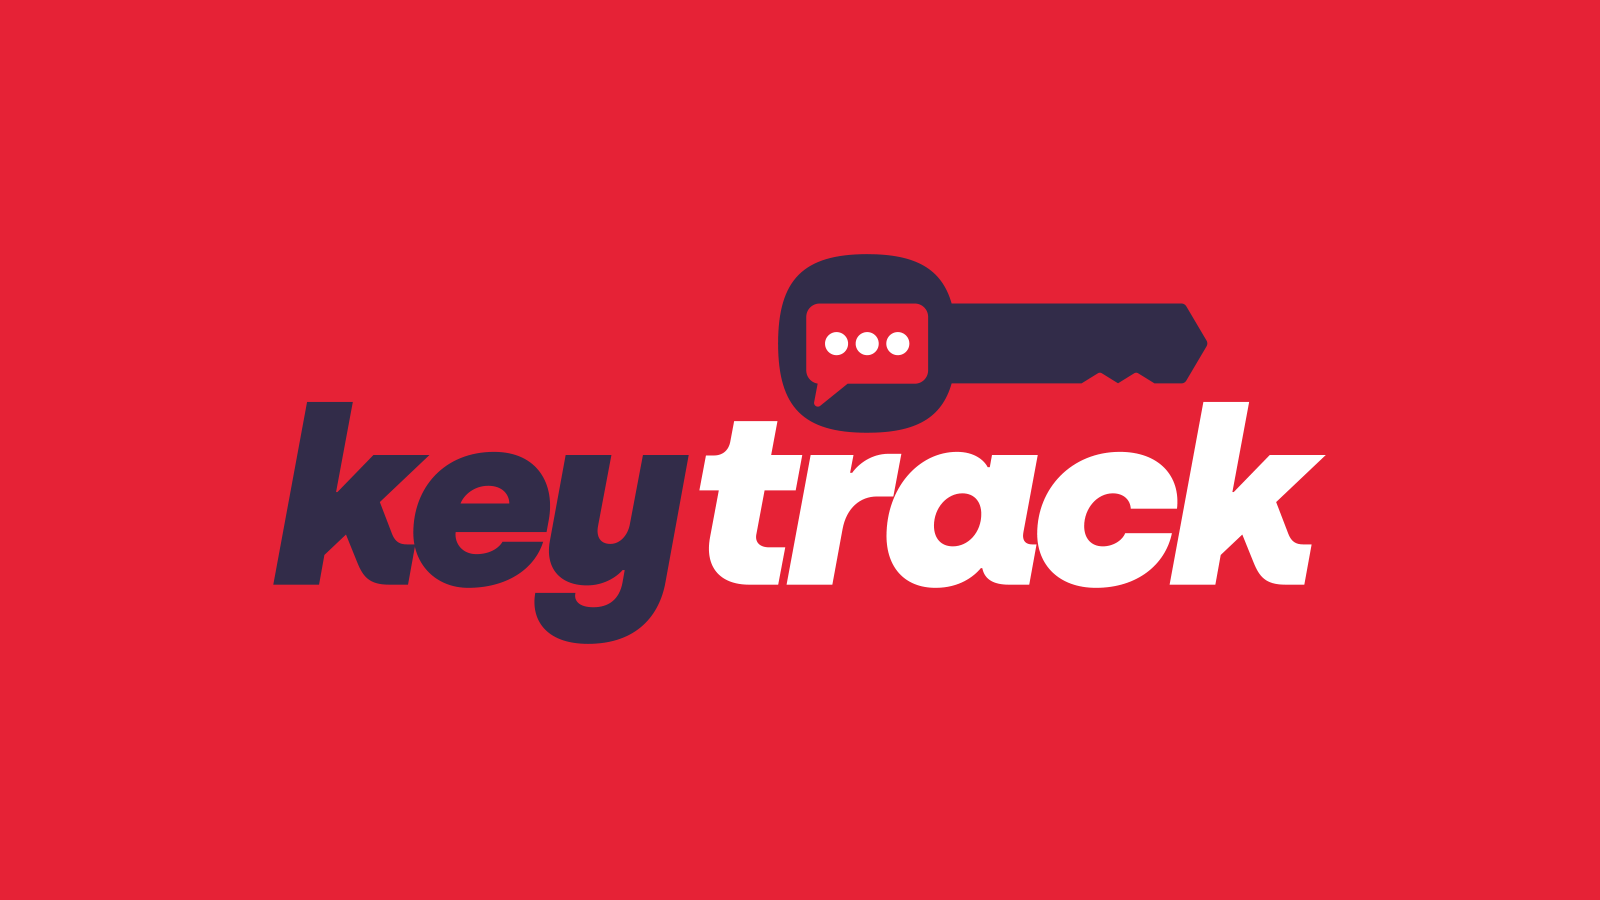 keytrack-logo-redesign-red